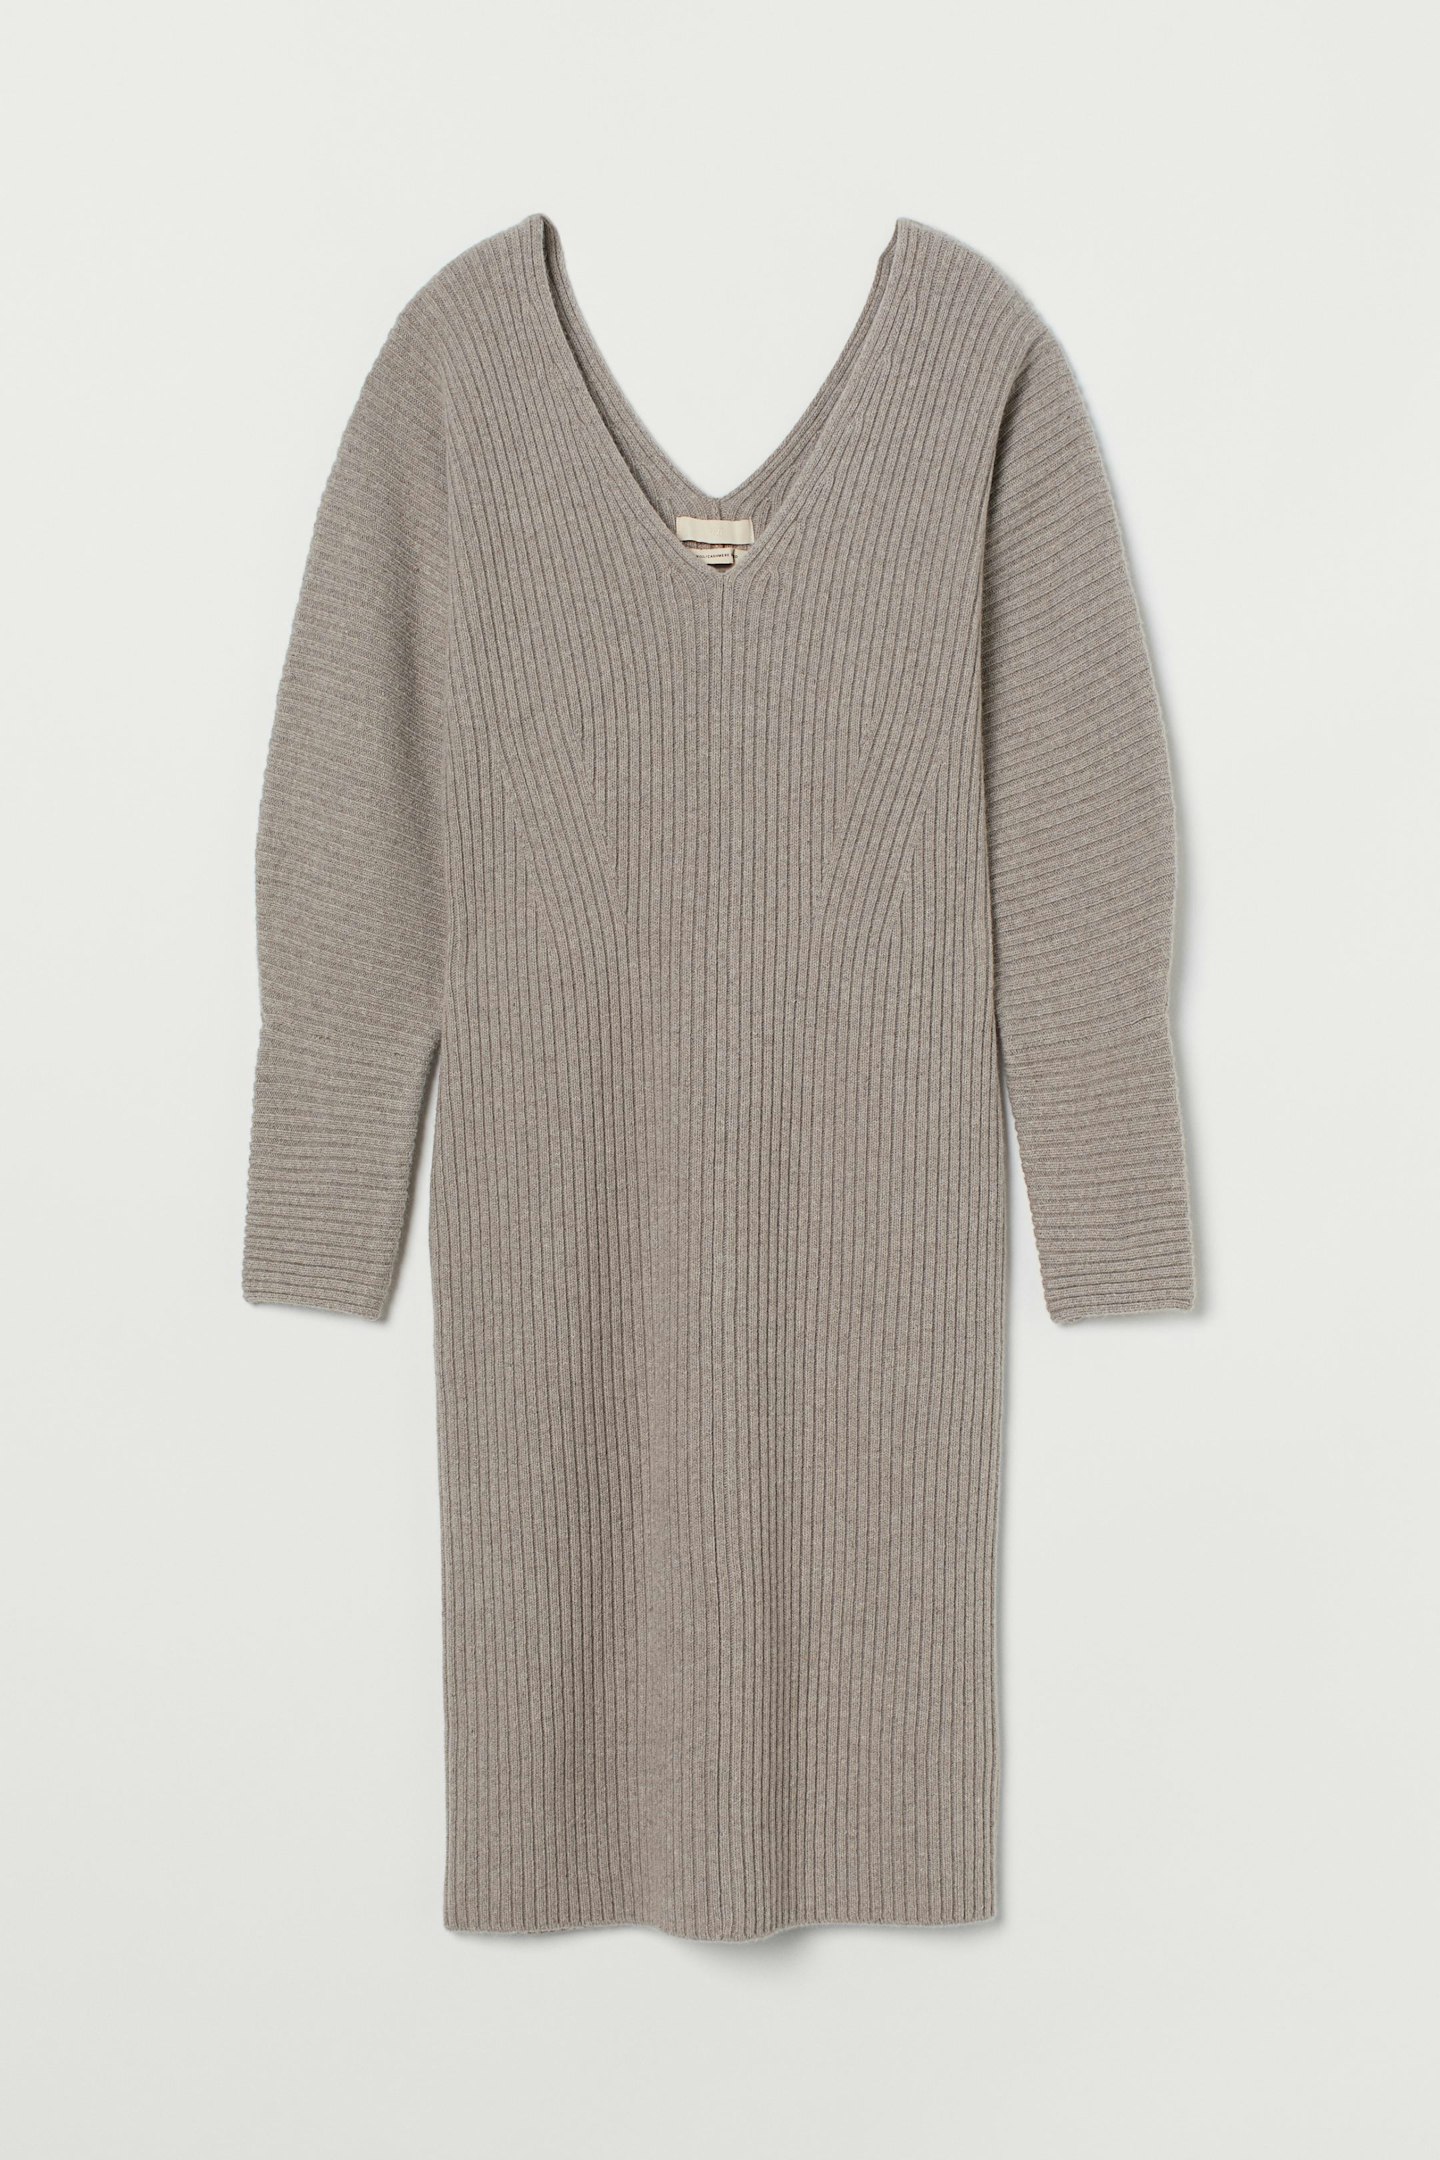 H&M, Rib-Knit Wool Dress, £79.99